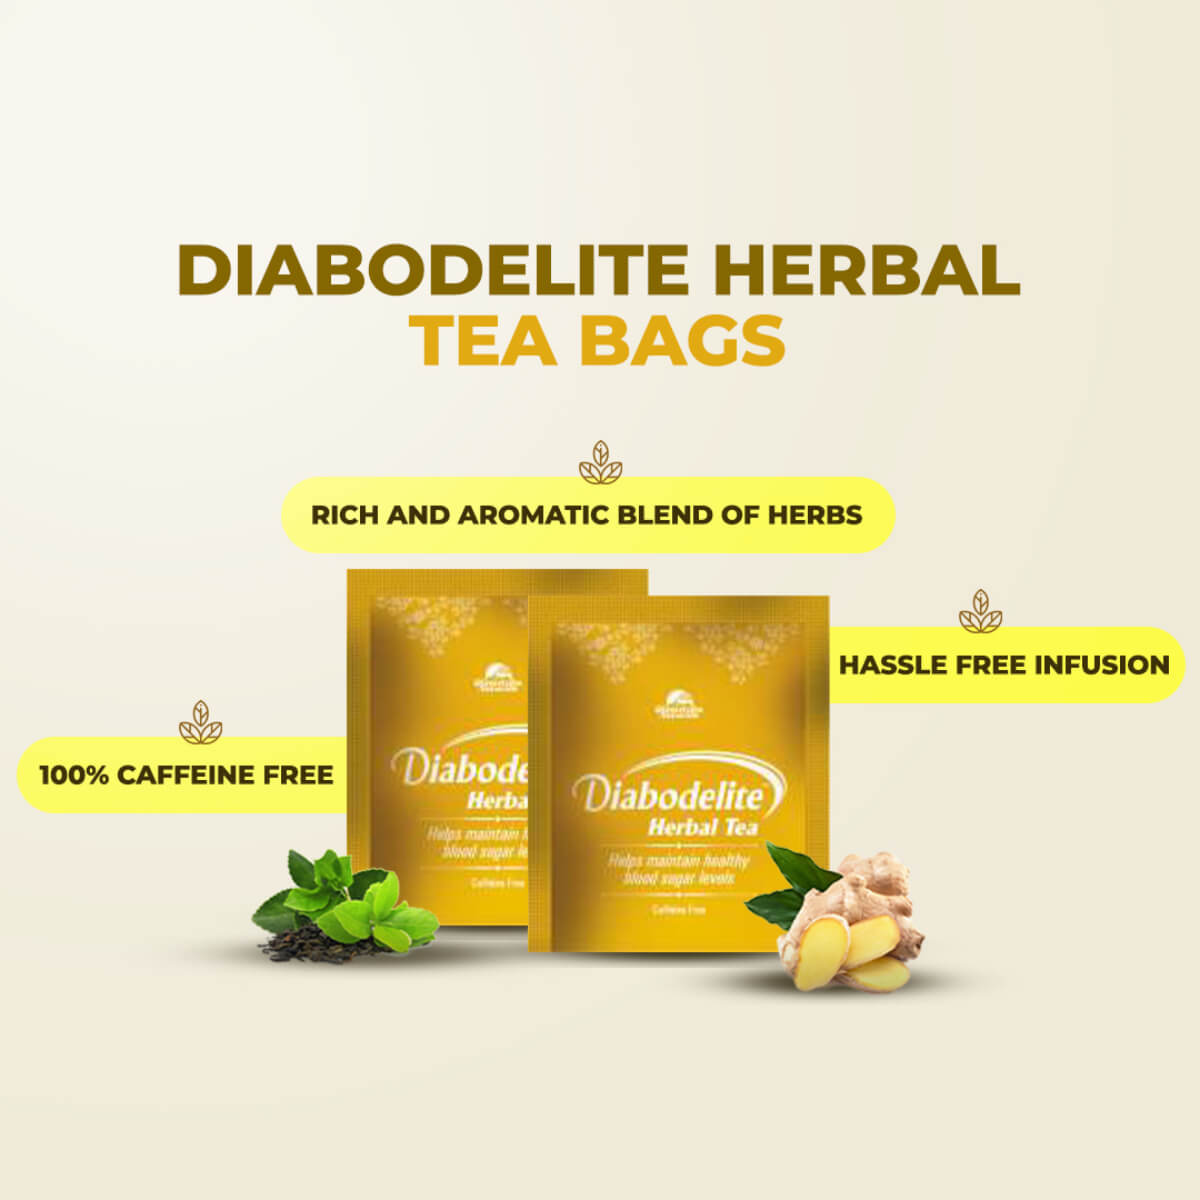 Diabodelite Tea 30's + Juice 500 ML ( Diabodelite Tea Pack of 5 Free)